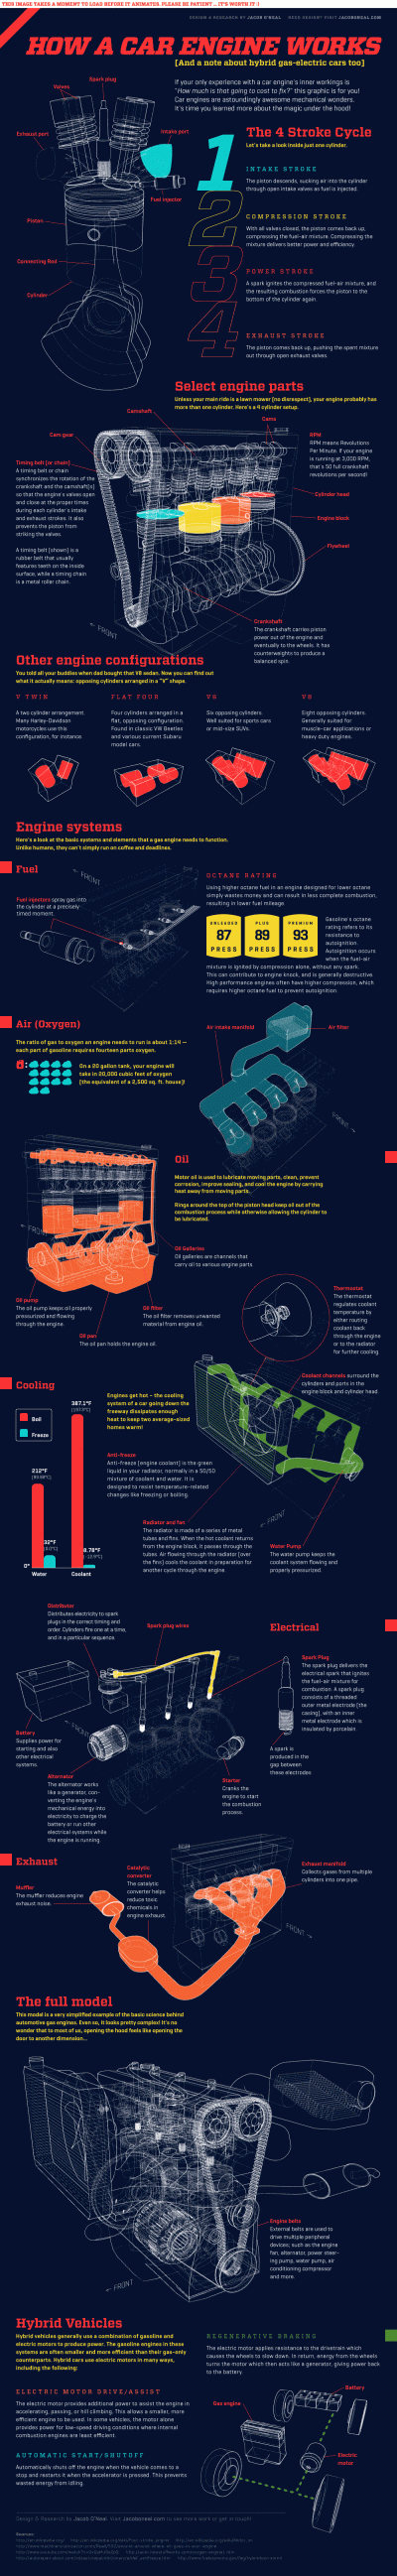 M.....u - #samochody #mechanika #infografika 

Fajna sprawa.